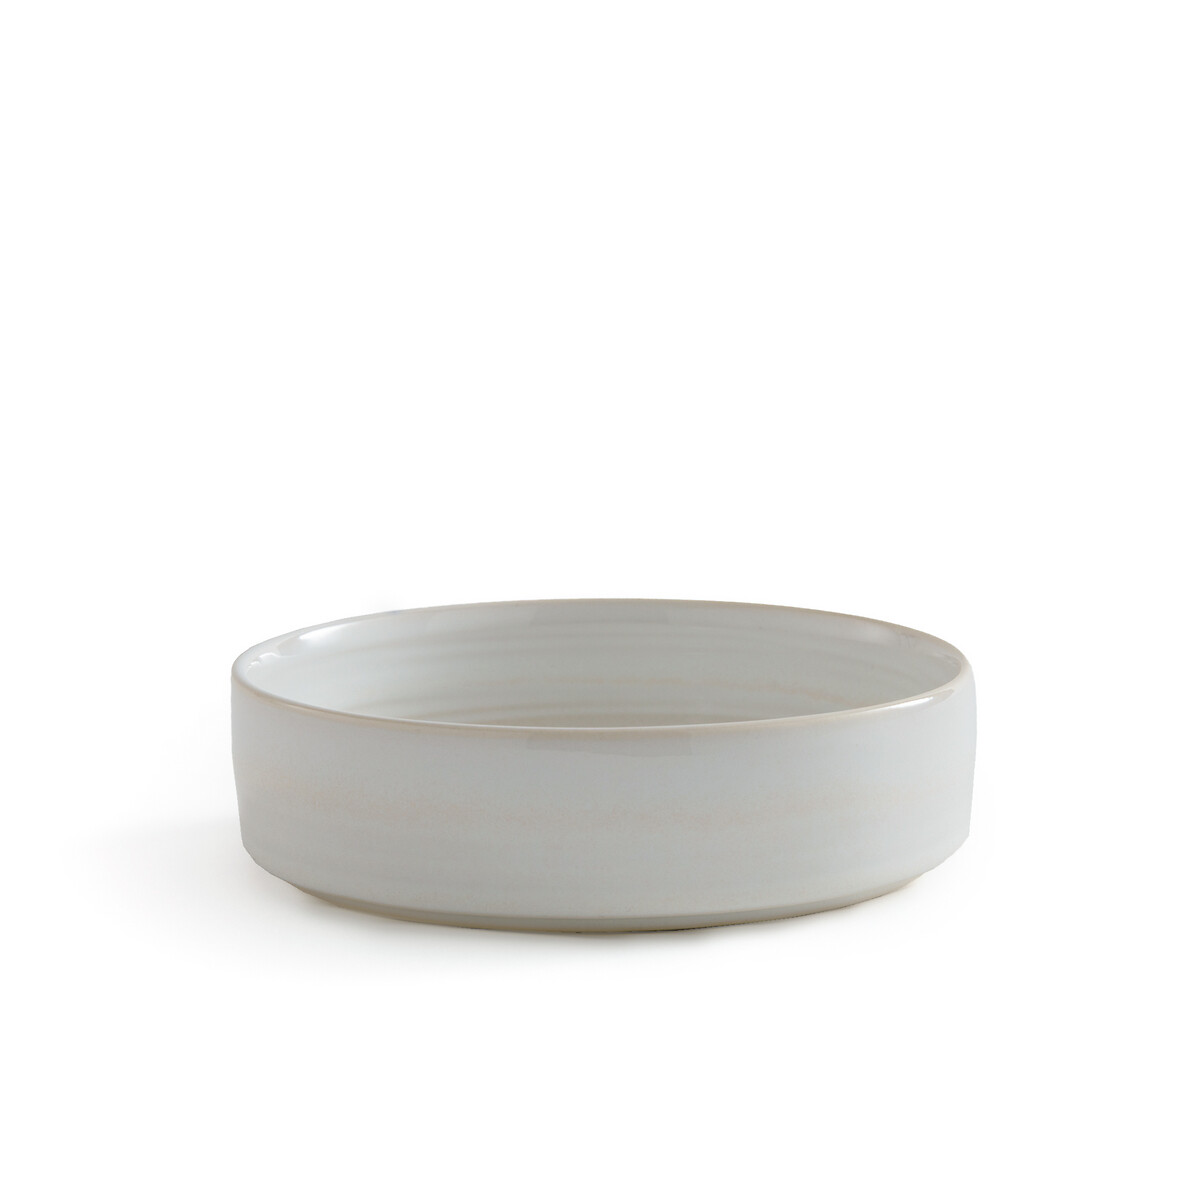 Комплект из 4 глубоких тарелок из керамики Sacha единый размер белый комплект из 4 глубоких тарелок hirne единый размер белый